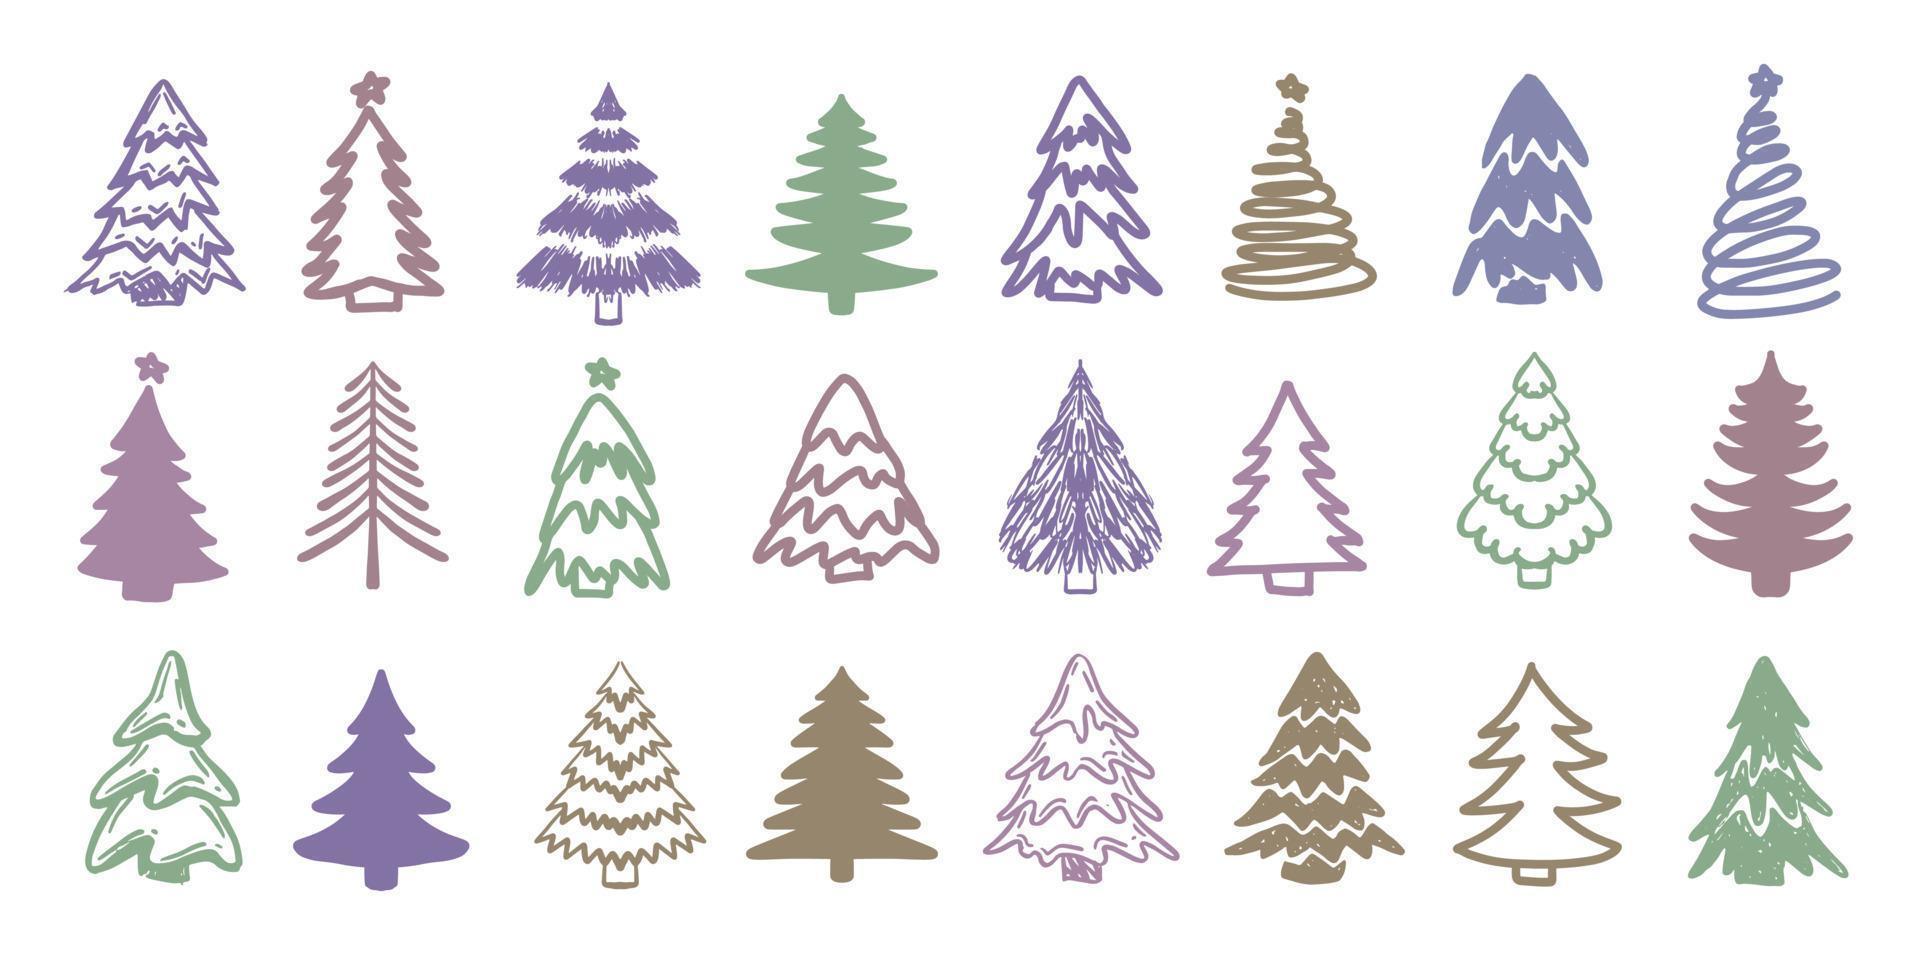 jul träd uppsättning, hand dragen illustrationer vektor